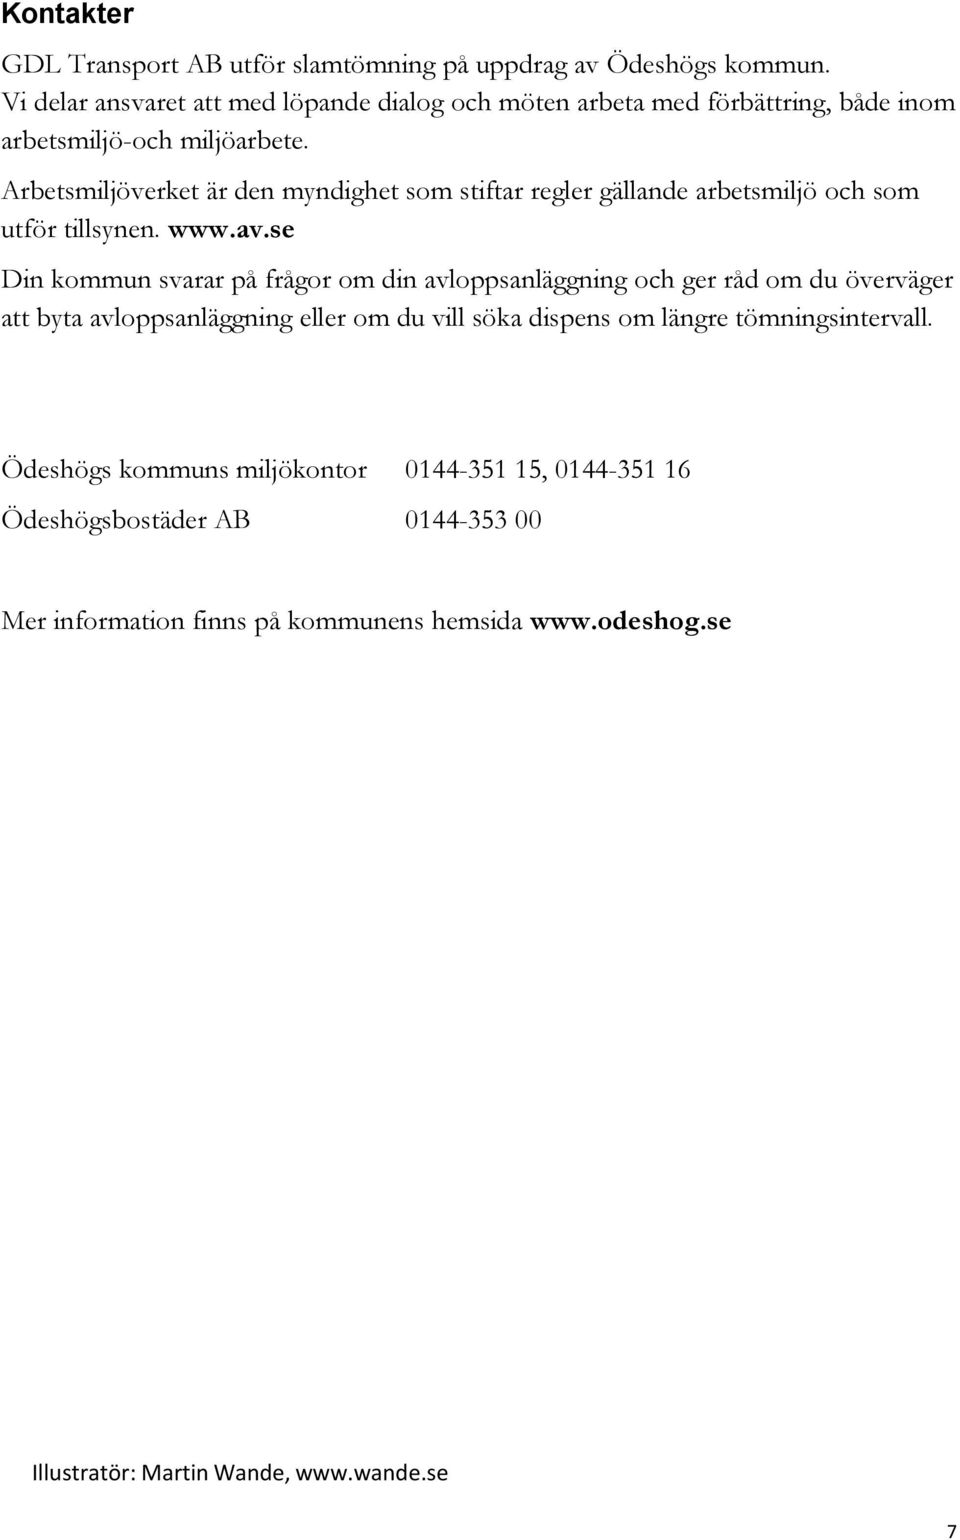 Arbetsmiljöverket är den myndighet som stiftar regler gällande arbetsmiljö och som utför tillsynen. www.av.